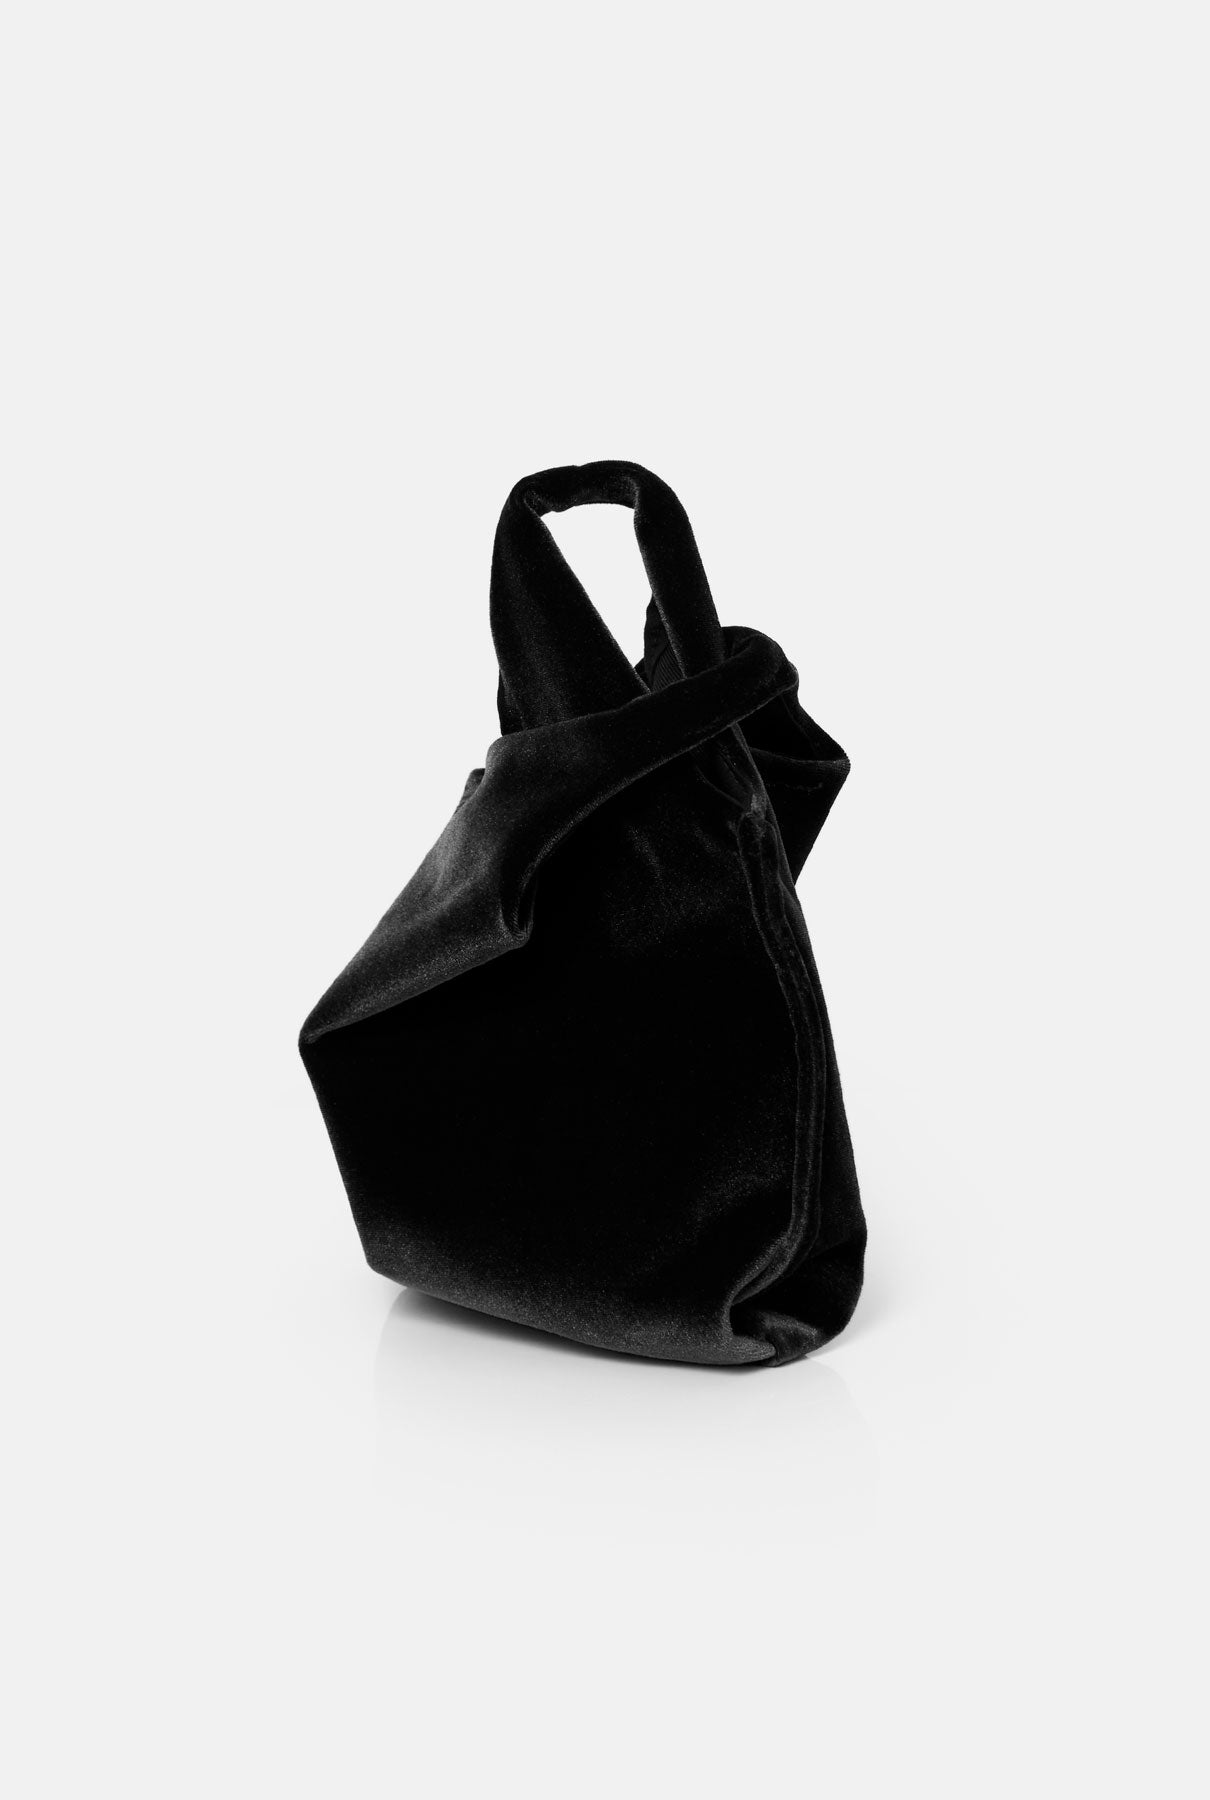 The baby julia bag new velvet black Mini bags The Bag Lab 